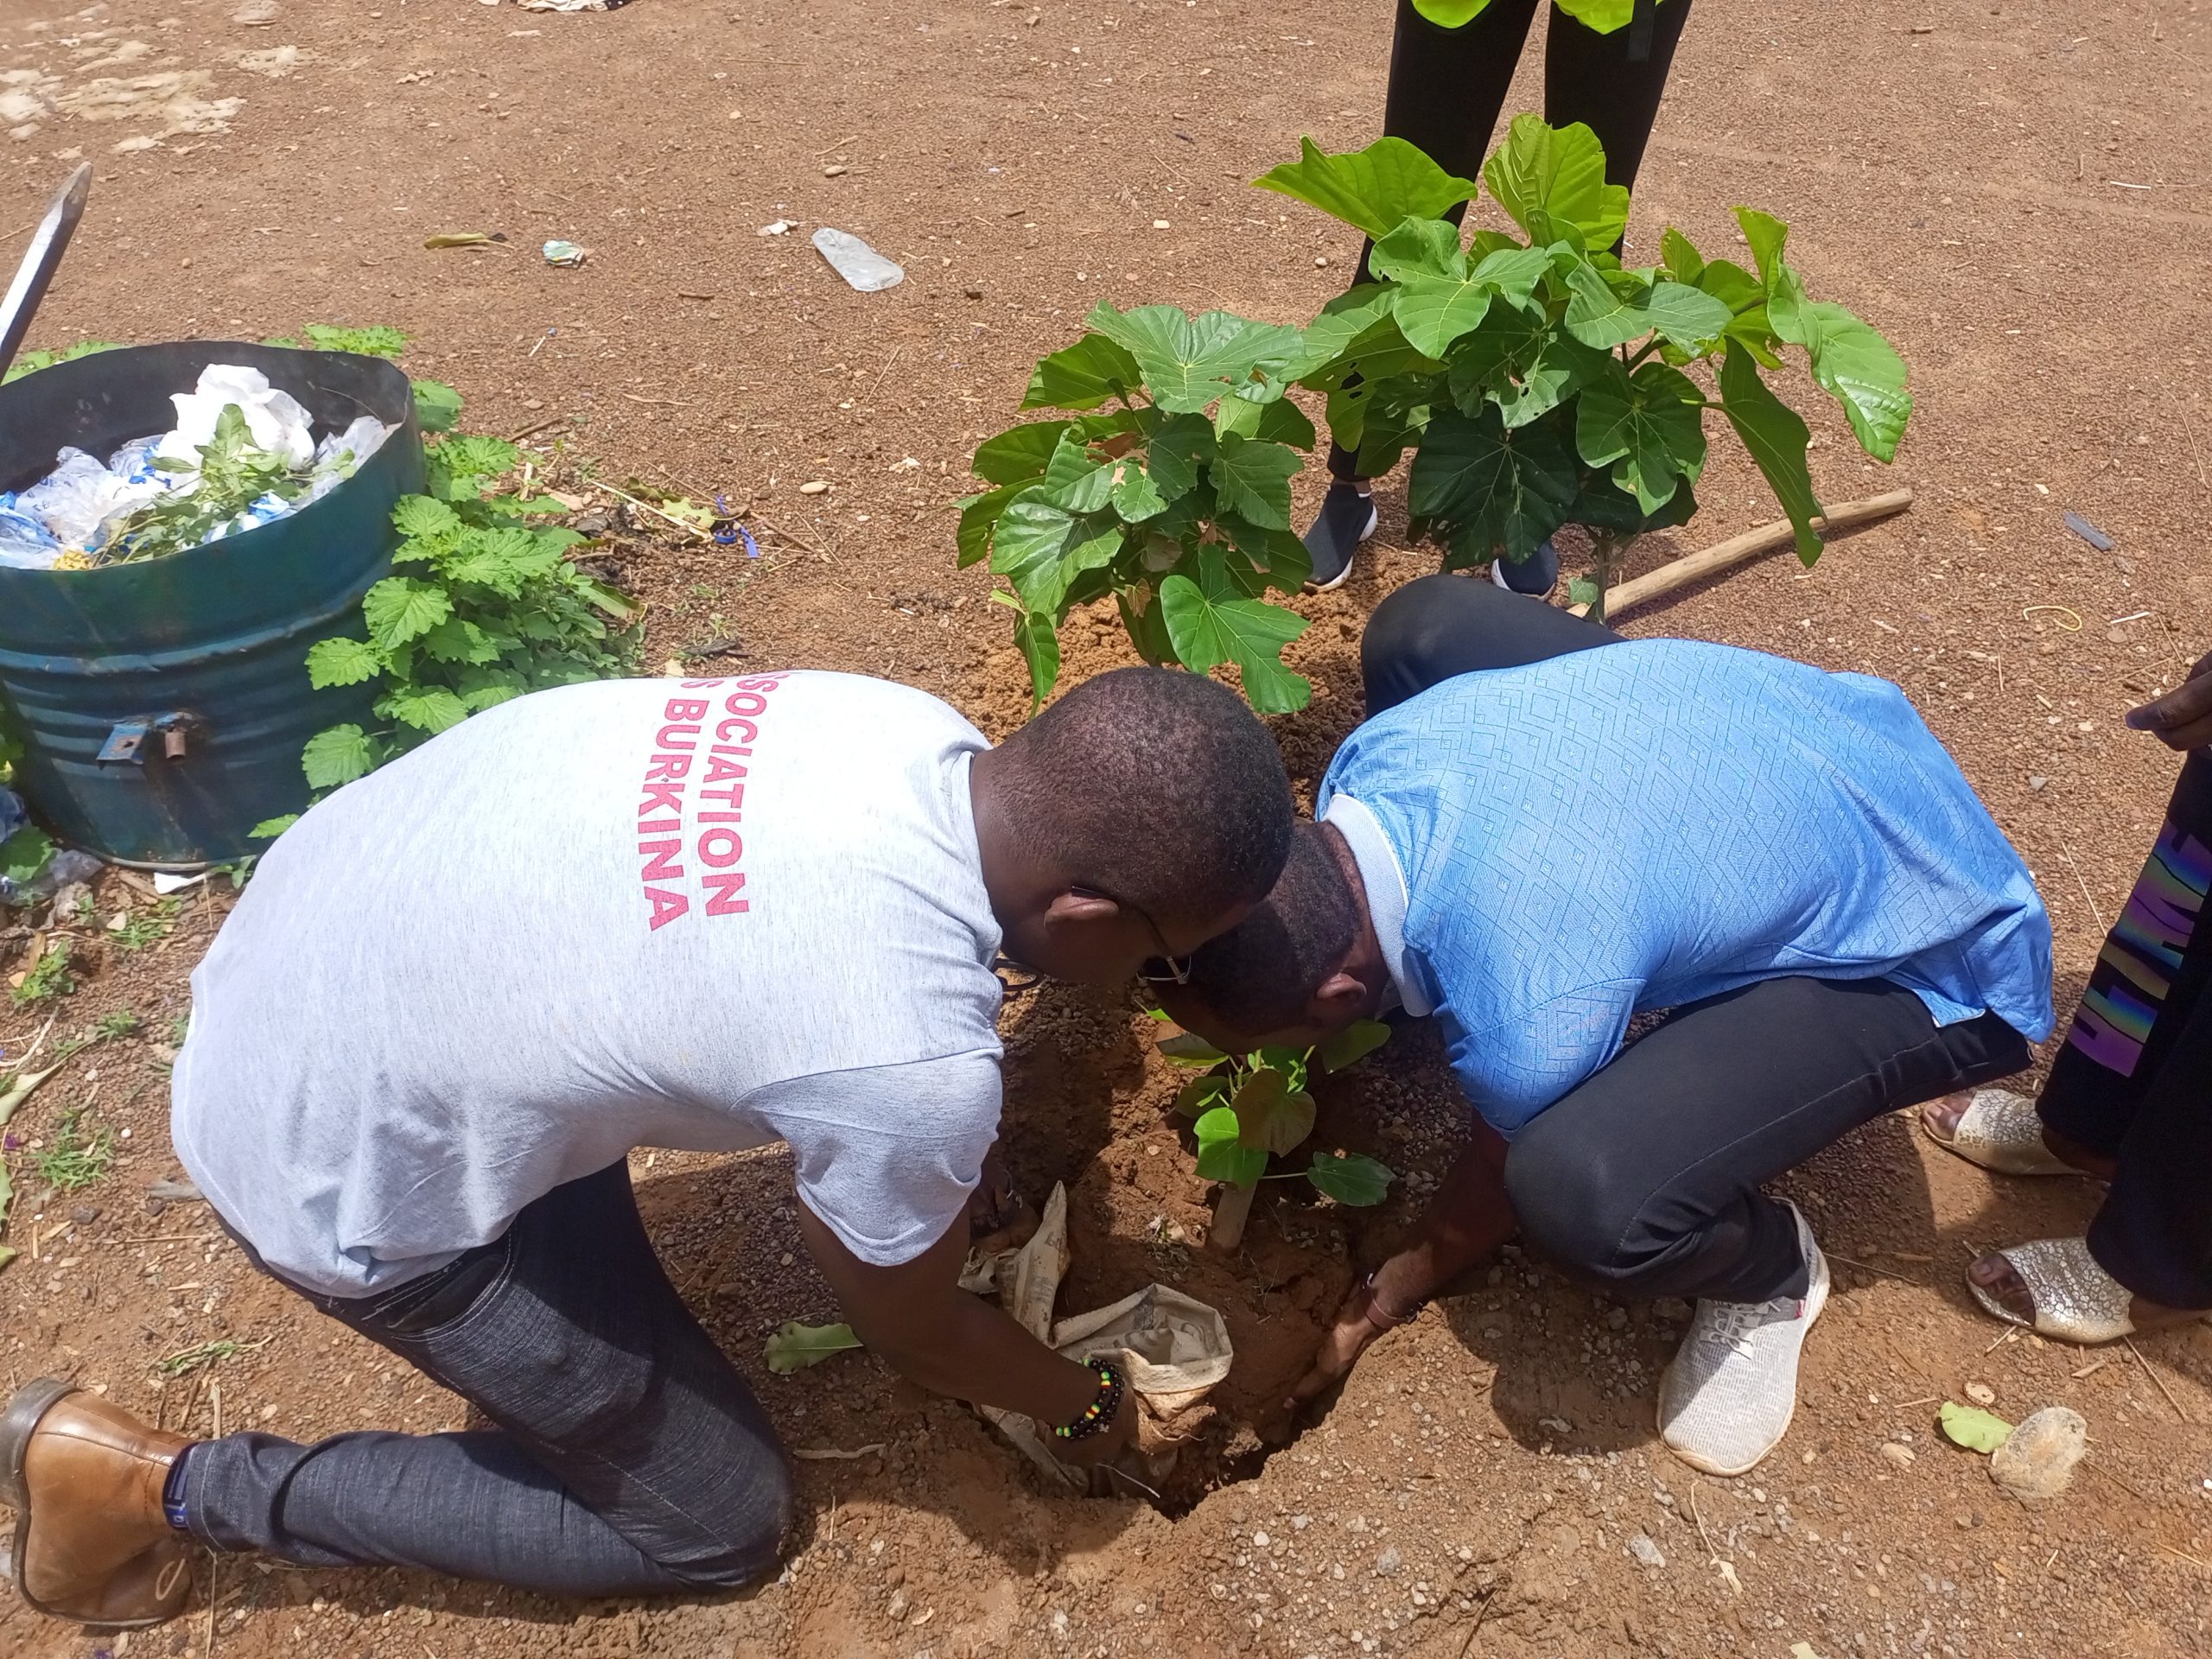 Reboisement : SOS Burkina apporte plus de verdure à l’école primaire Sinyiri C